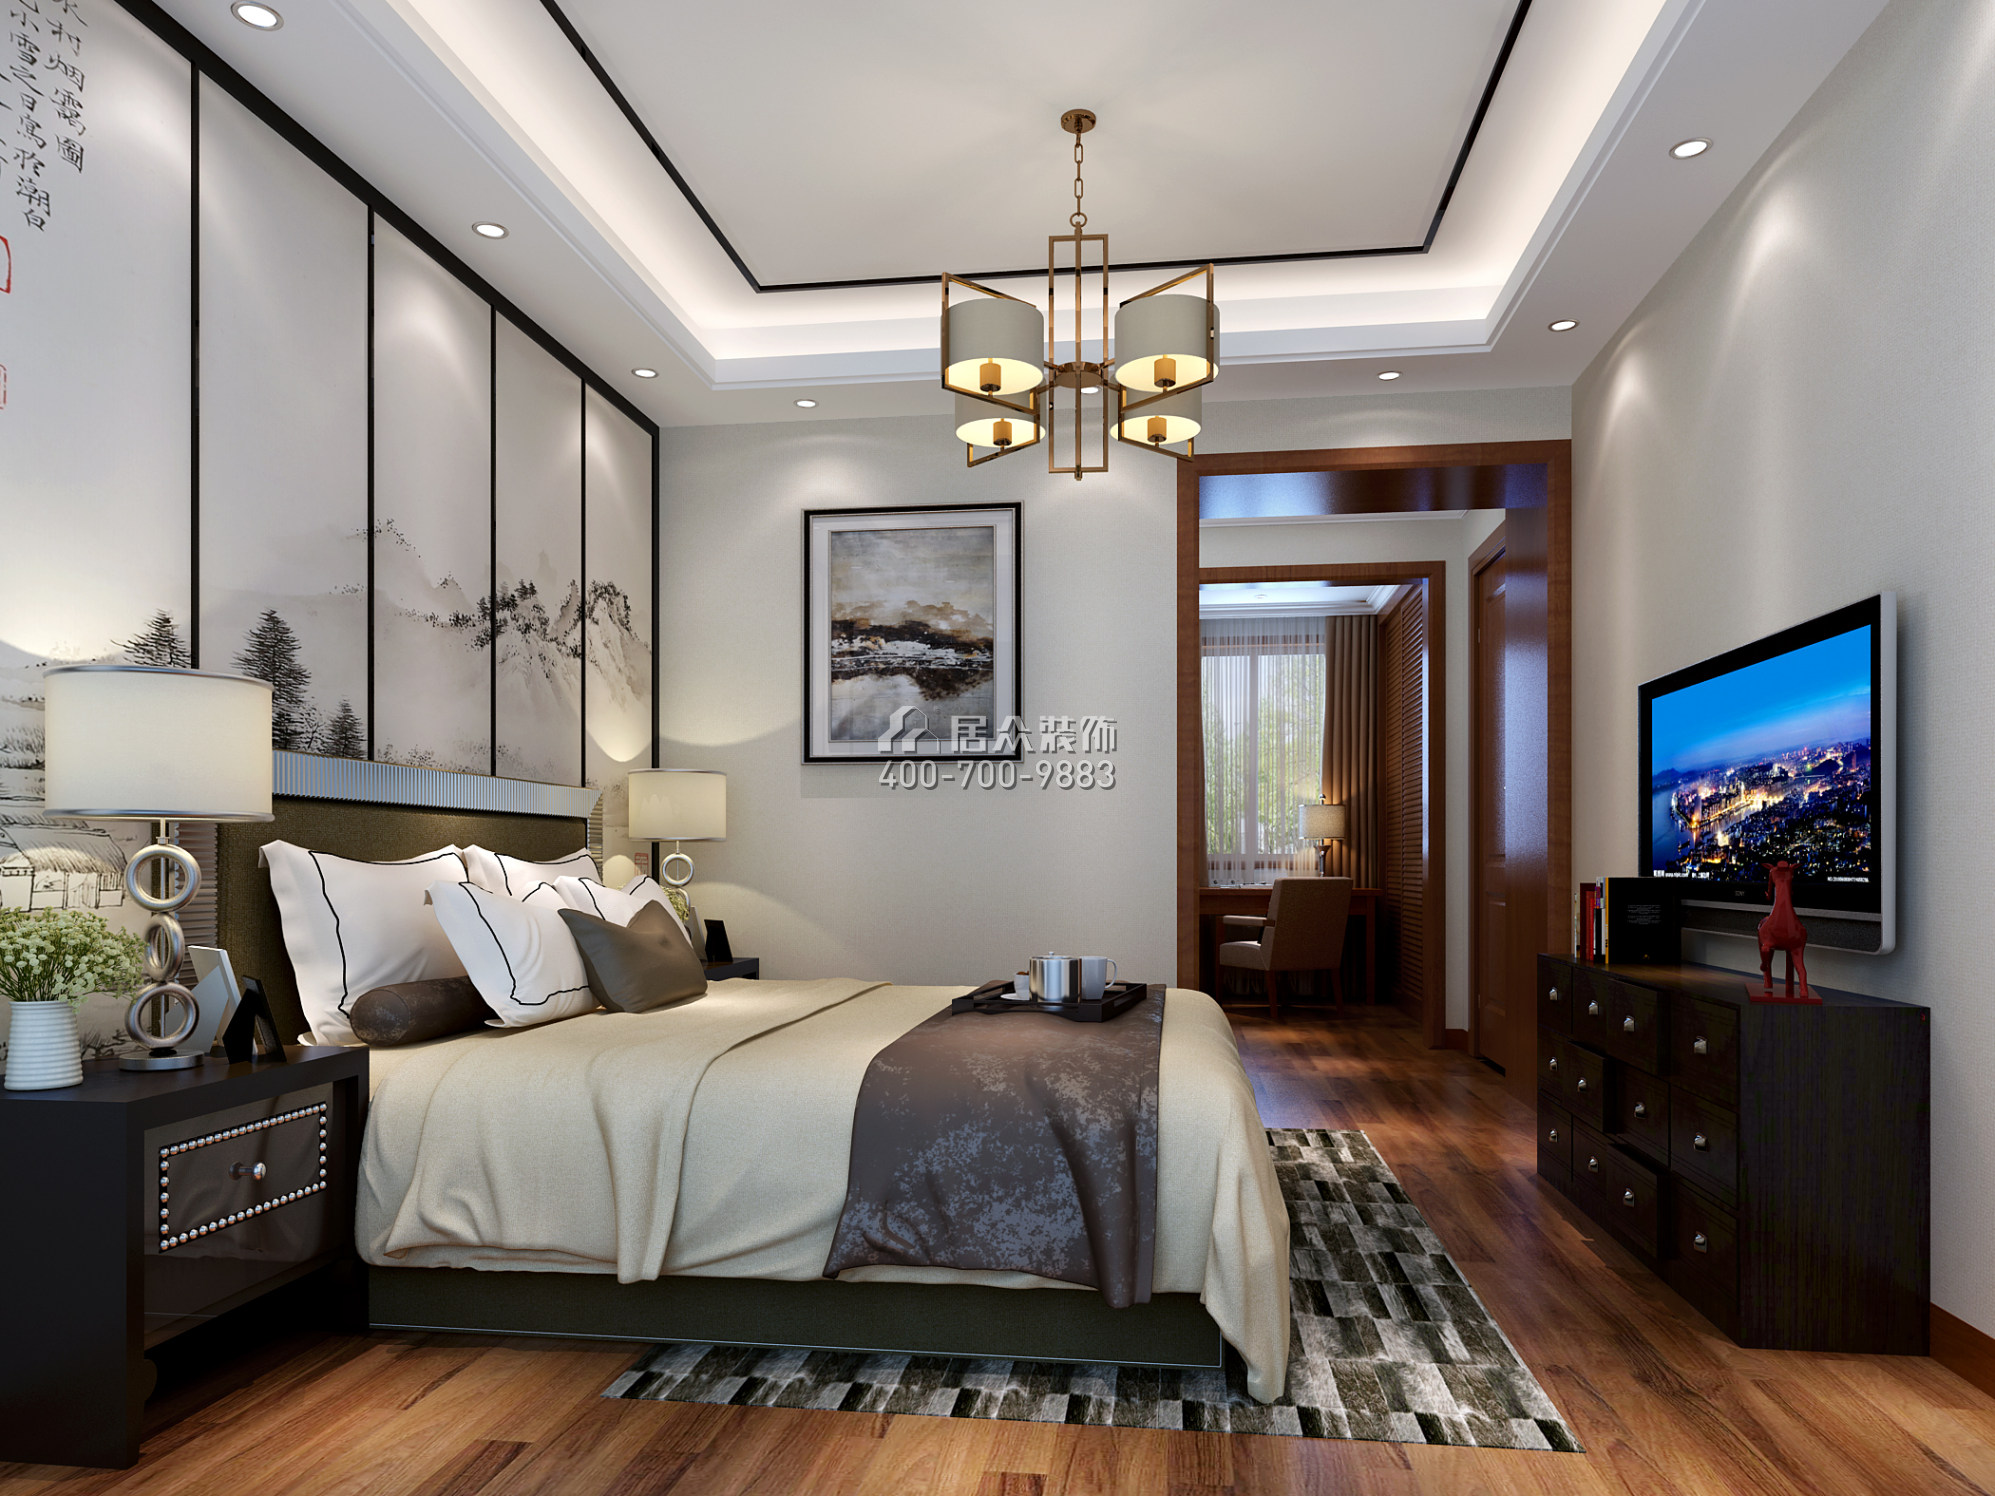 同和悦园139平方米中式风格平层户型卧室开元官网效果图